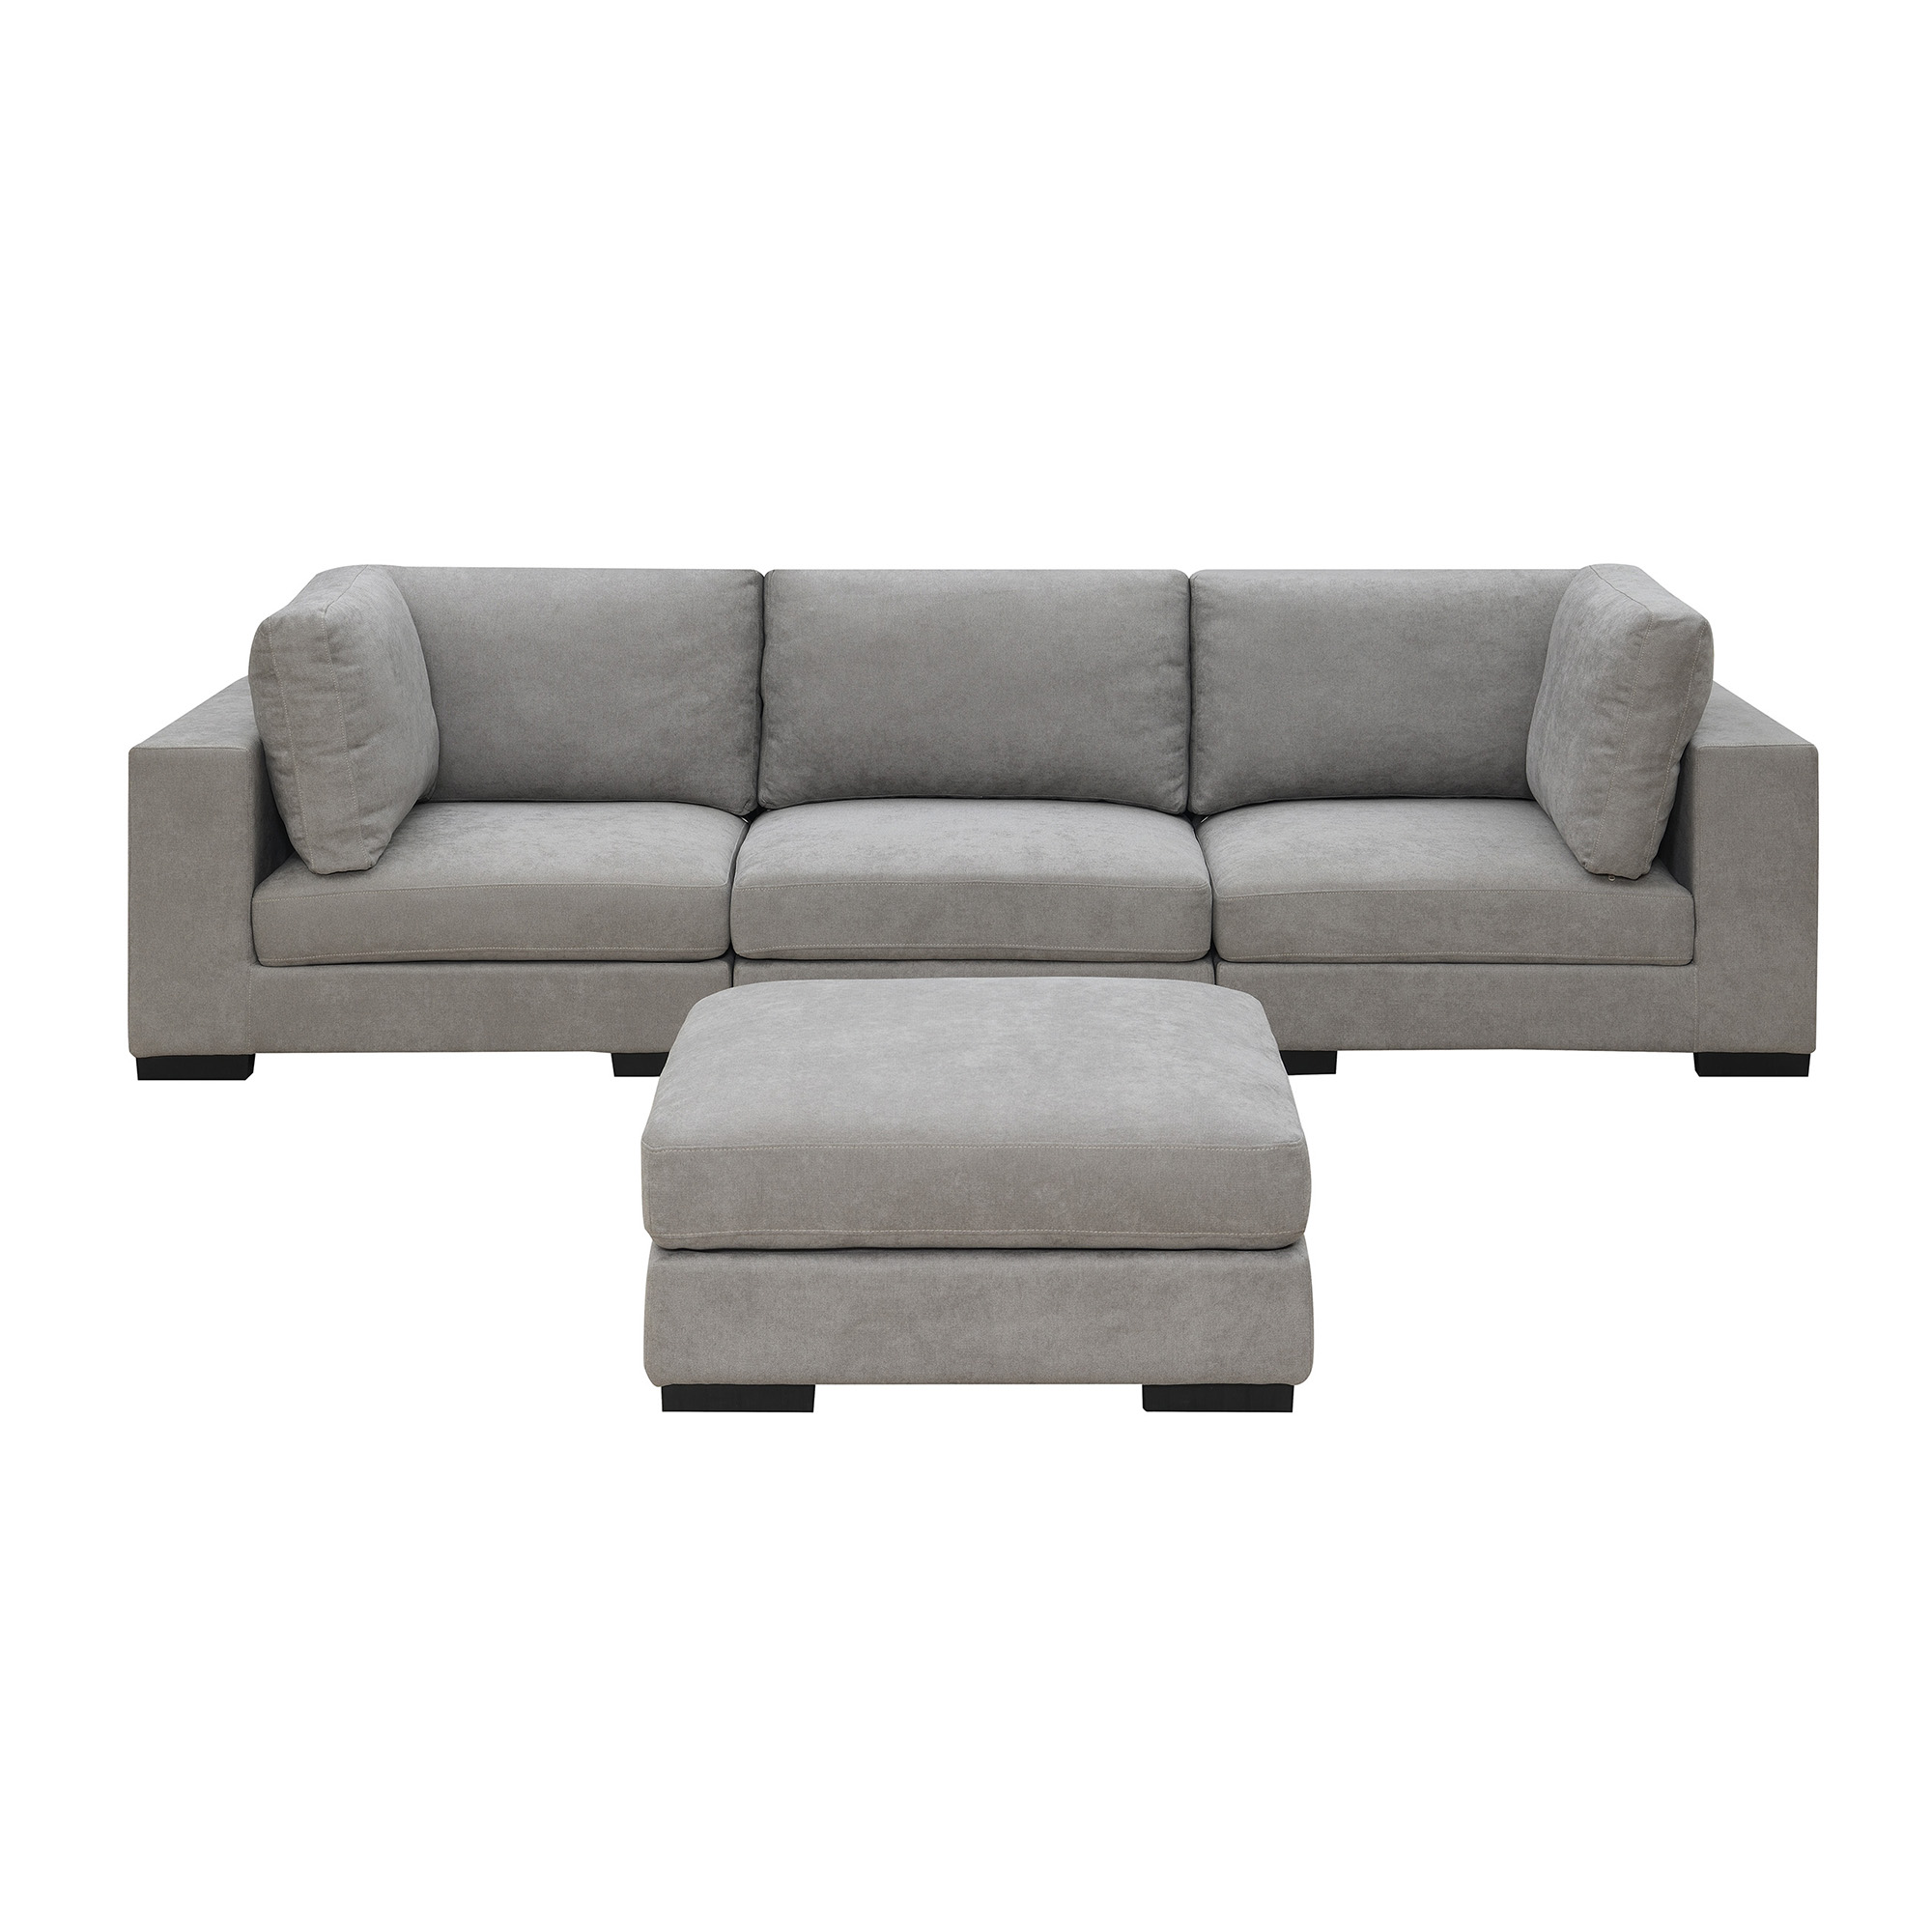 Orisfur Fabric Upholstered Modular Sofa Collection, Modular Customizable and Reconfigurable Deep Seating with Removable Ottoman (3-Seat+Ottoman)-CASAINC